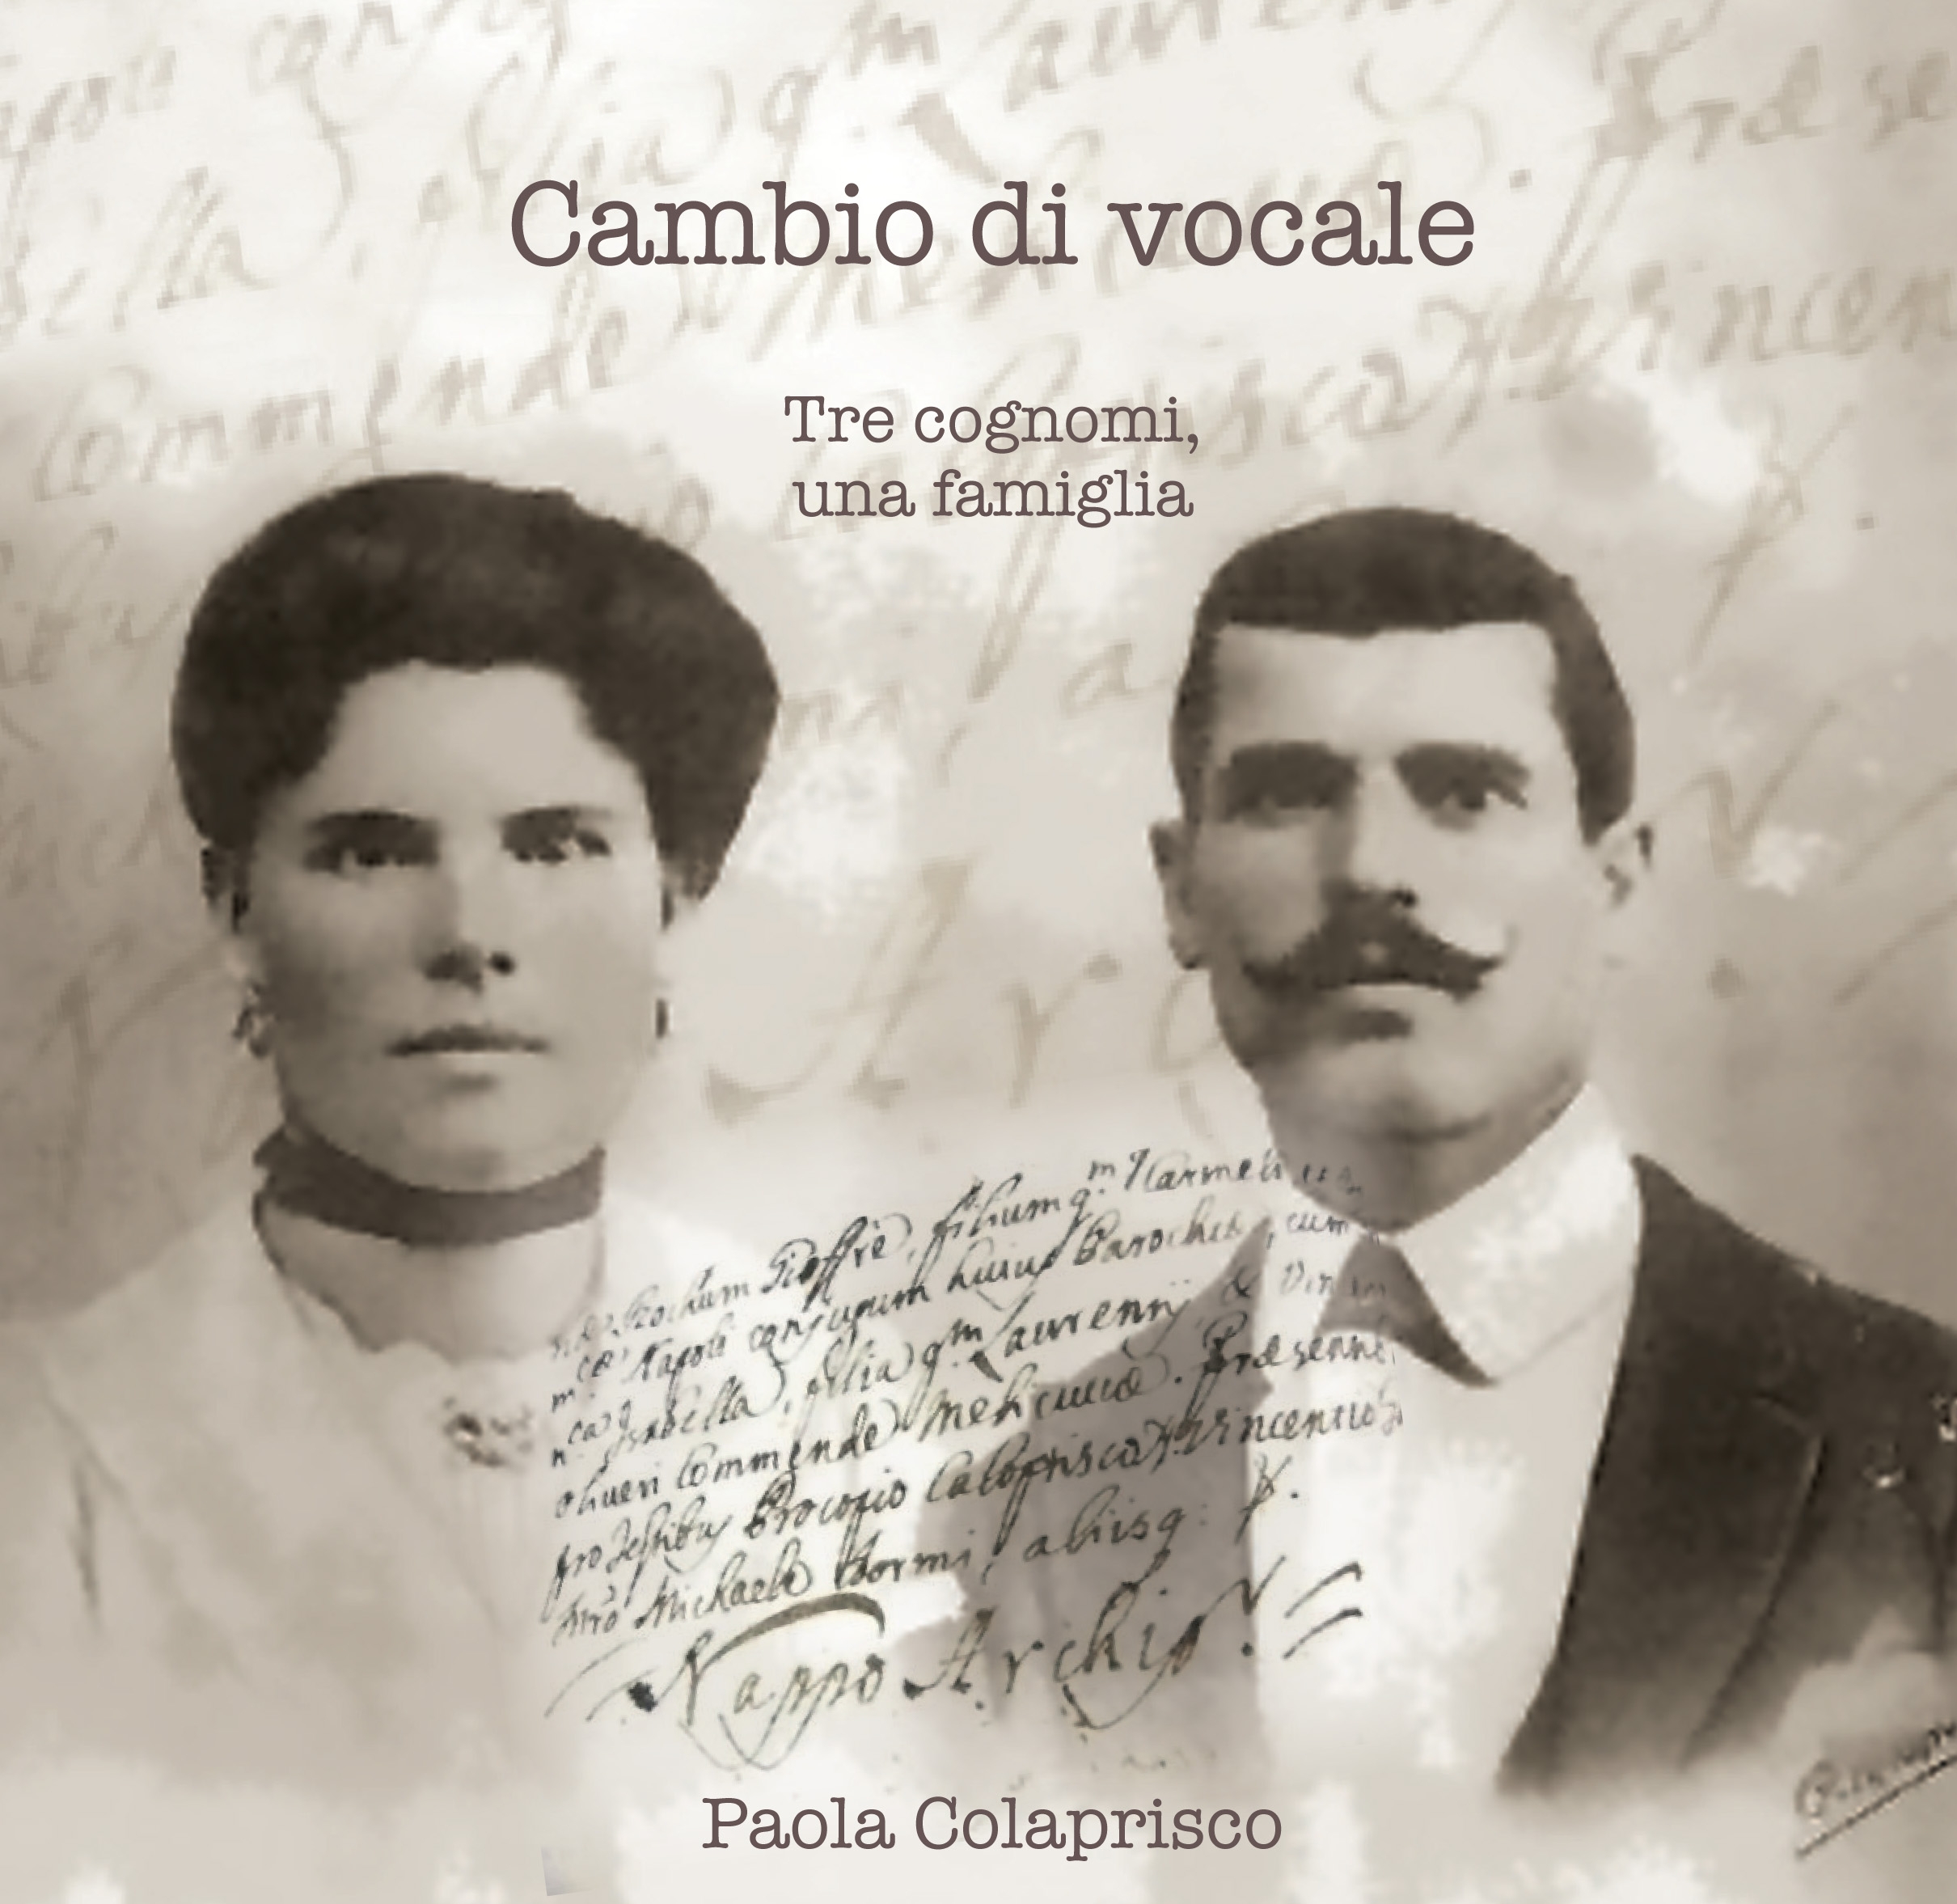 Amalia Marafioti & Domenico Coloprisco, 1905 Italy